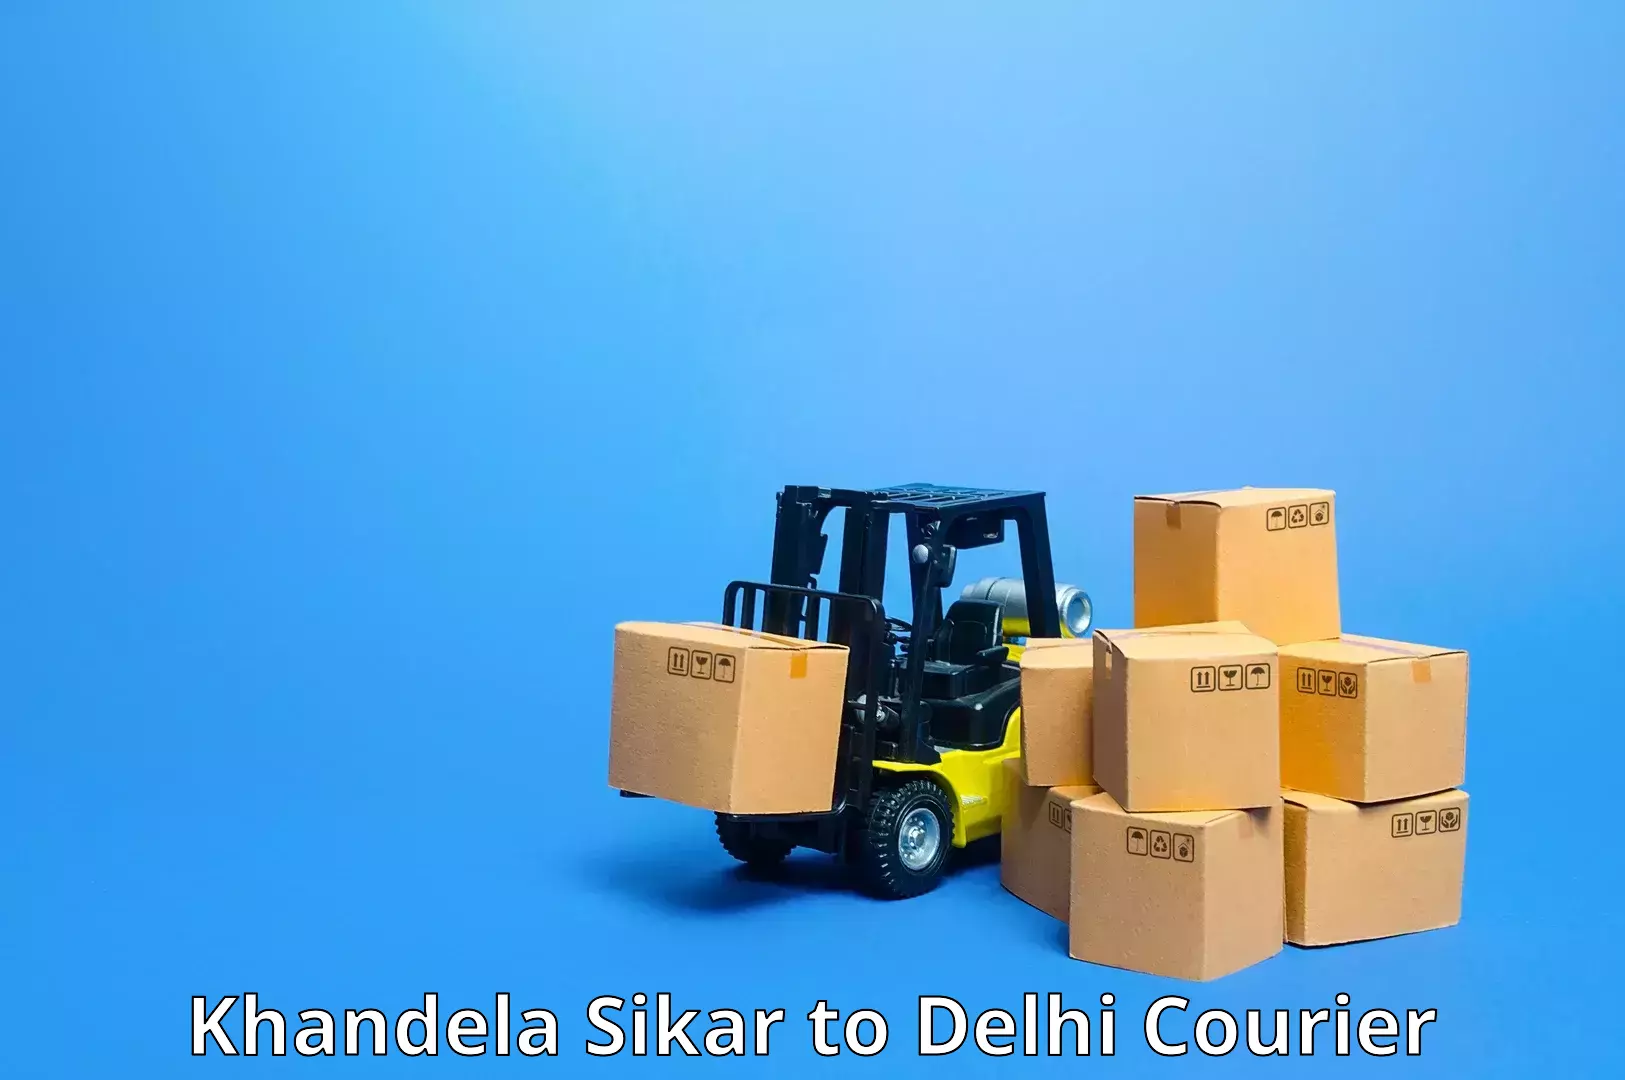 Affordable parcel service Khandela Sikar to IIT Delhi